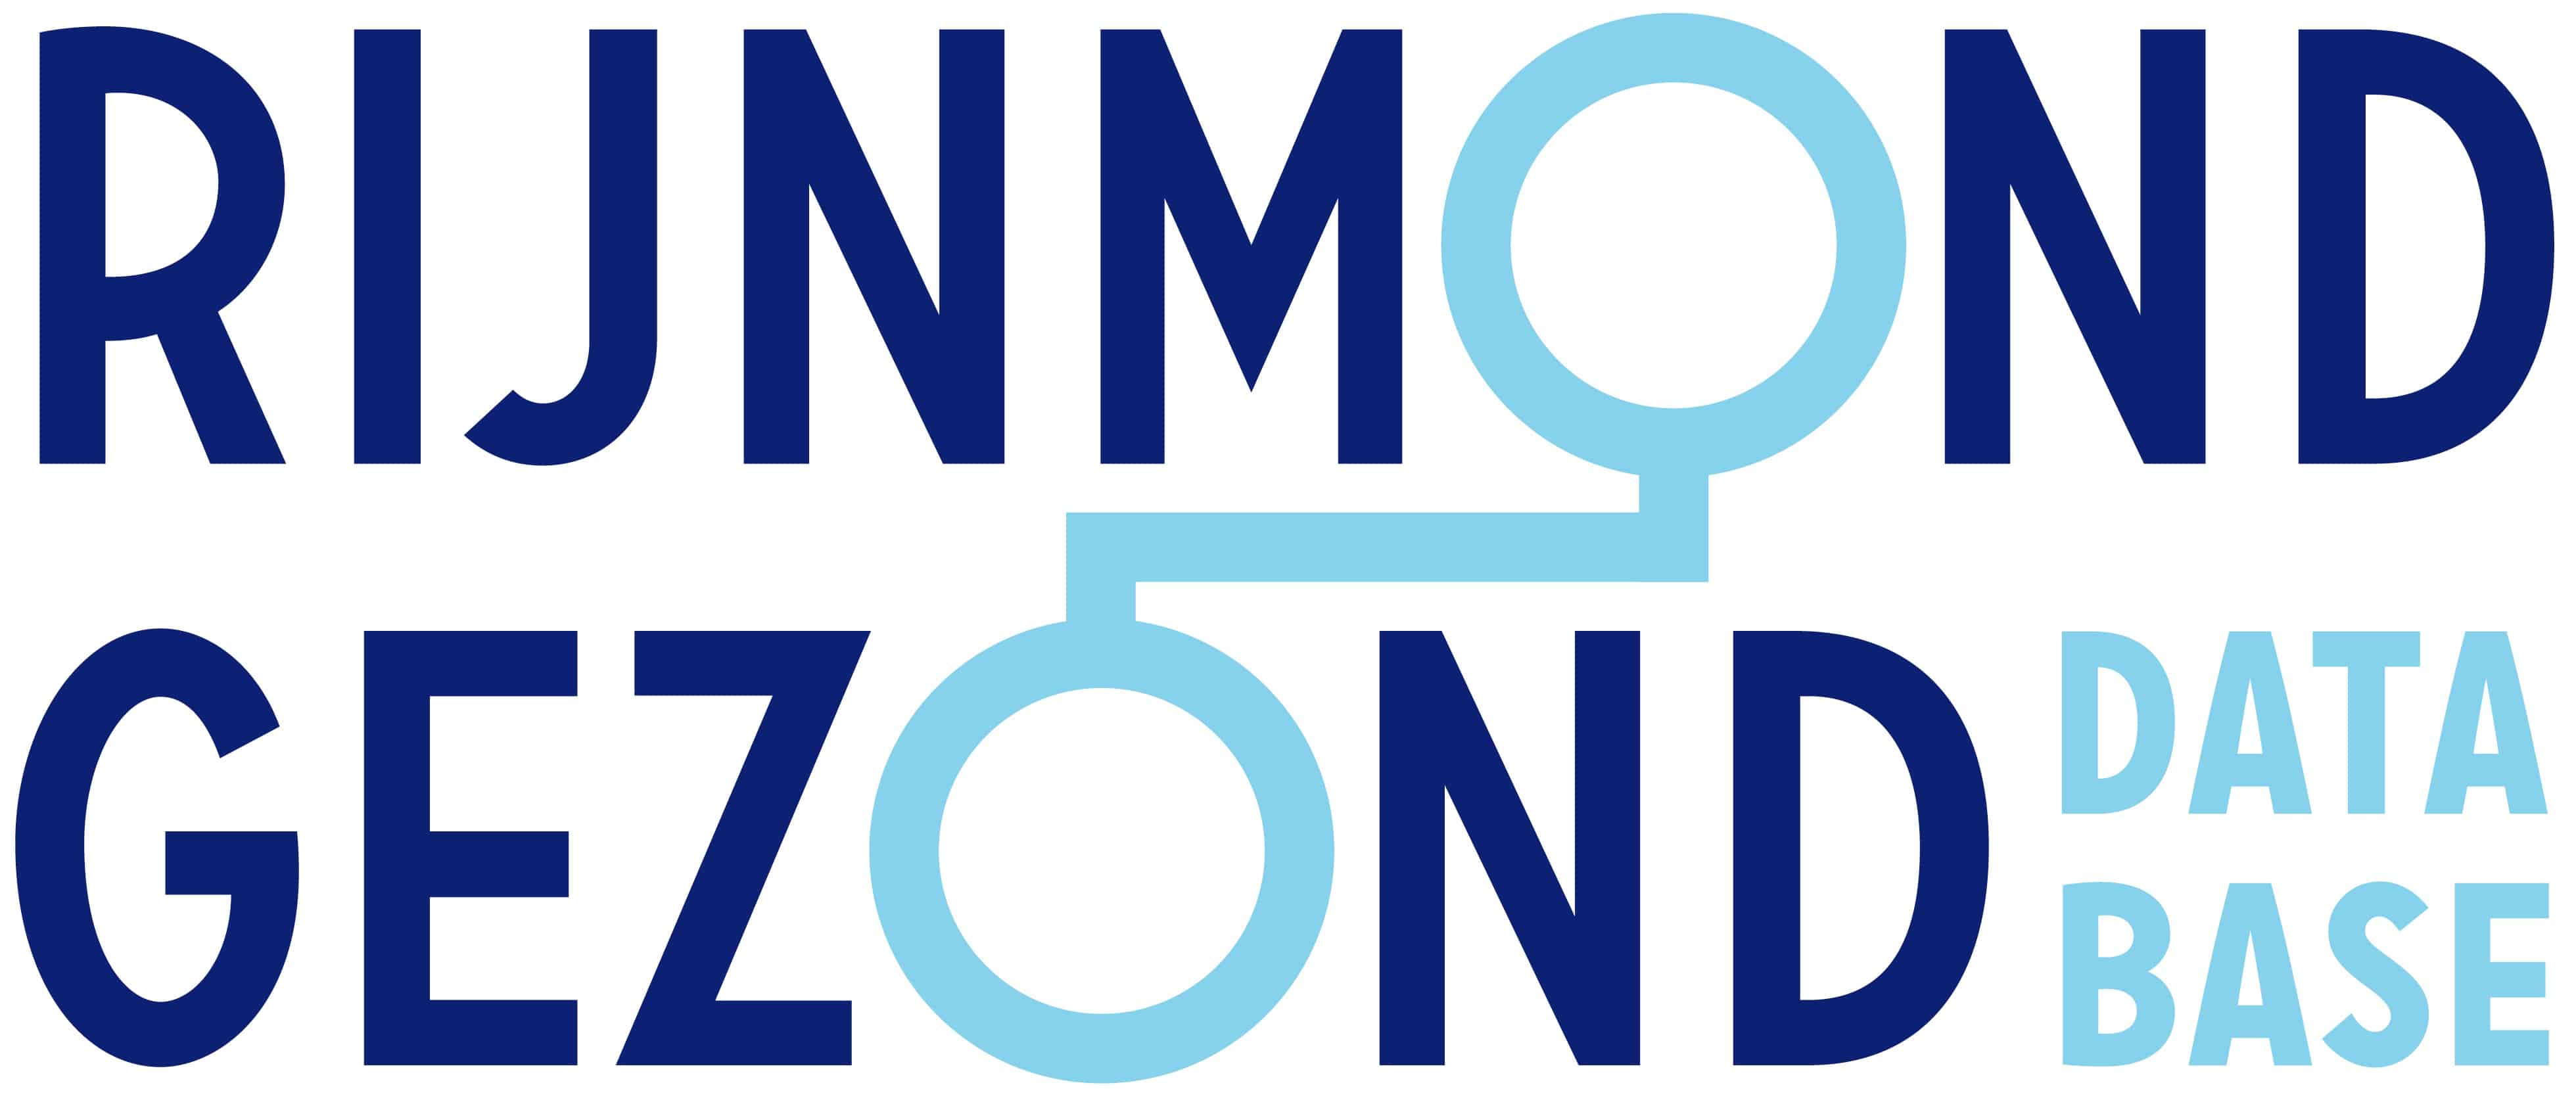 Rijnmond Gezond Database